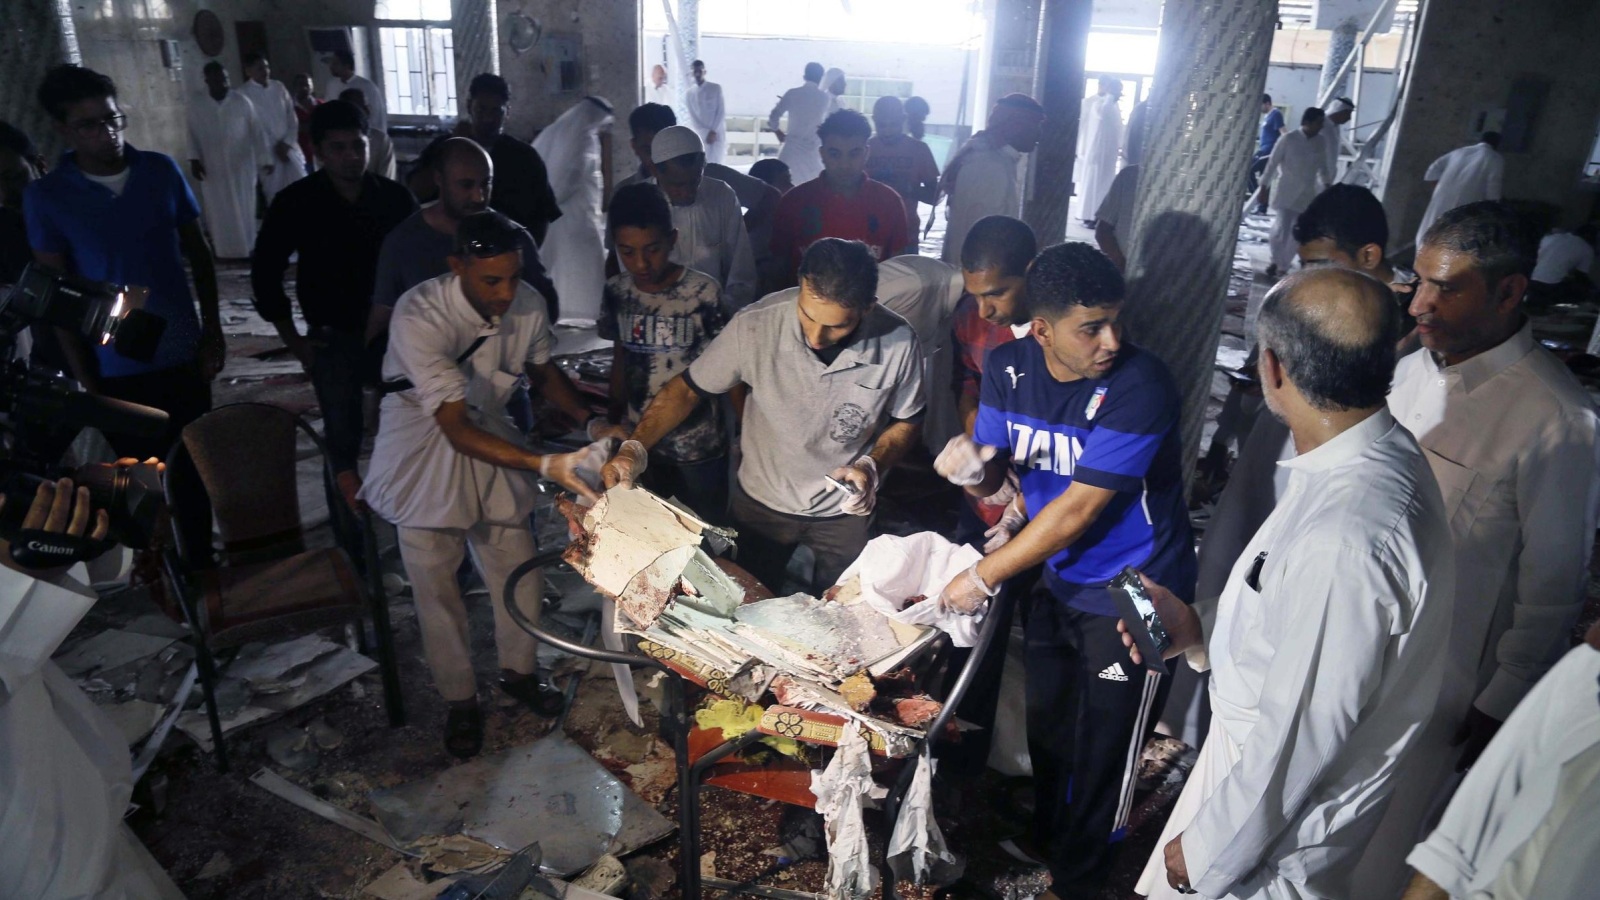 عشرات القتلى والجرحى سقطوا في تفجير مسجد شيعي بالقطيف الأسبوع الماضي (الأوروبية)